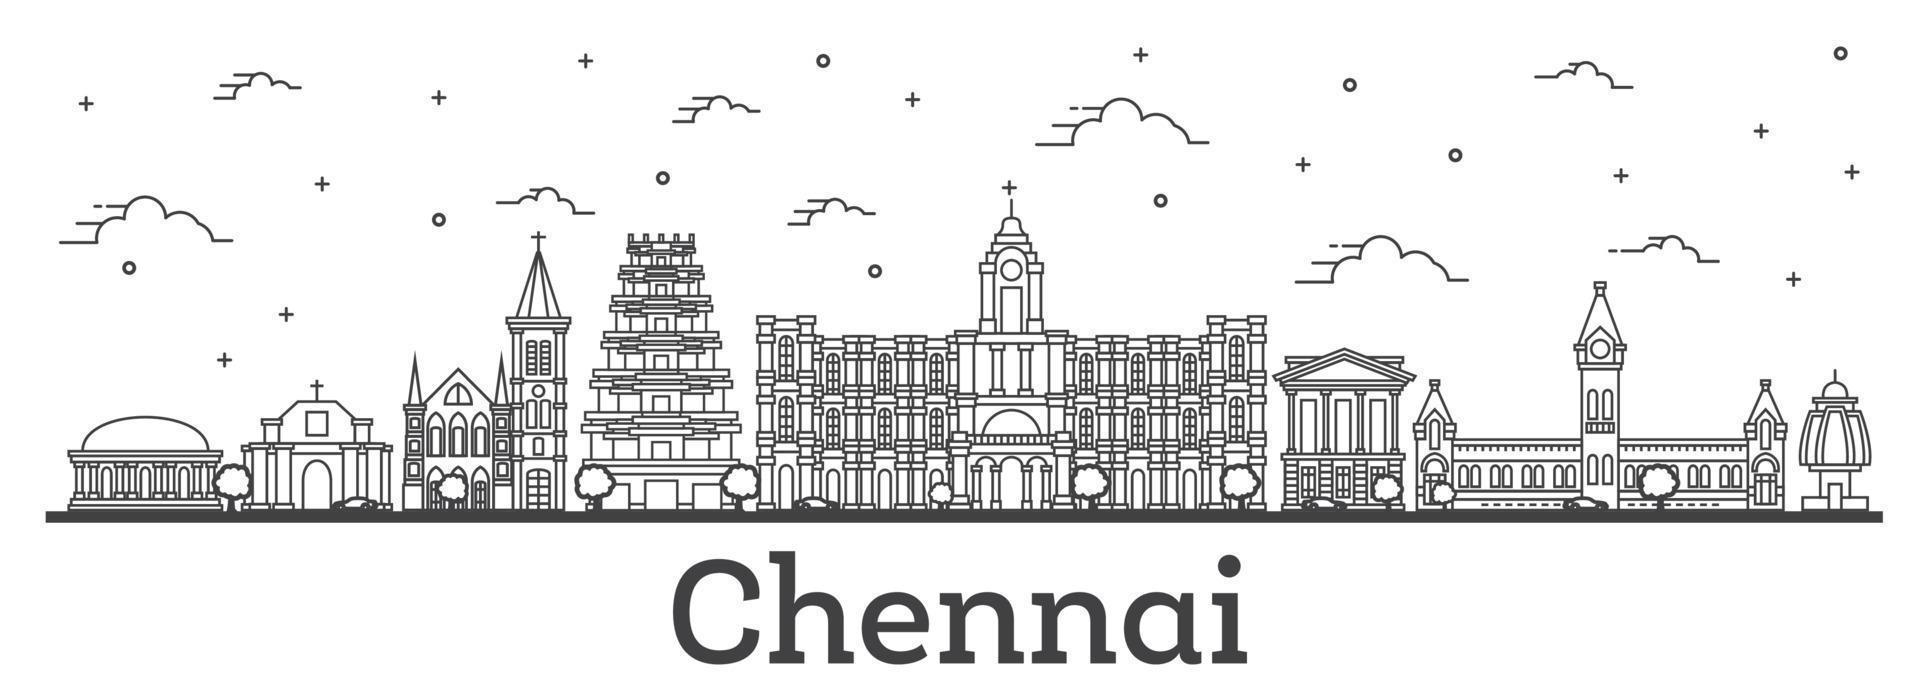 delinear el horizonte de la ciudad de chennai india con edificios históricos aislados en blanco. vector